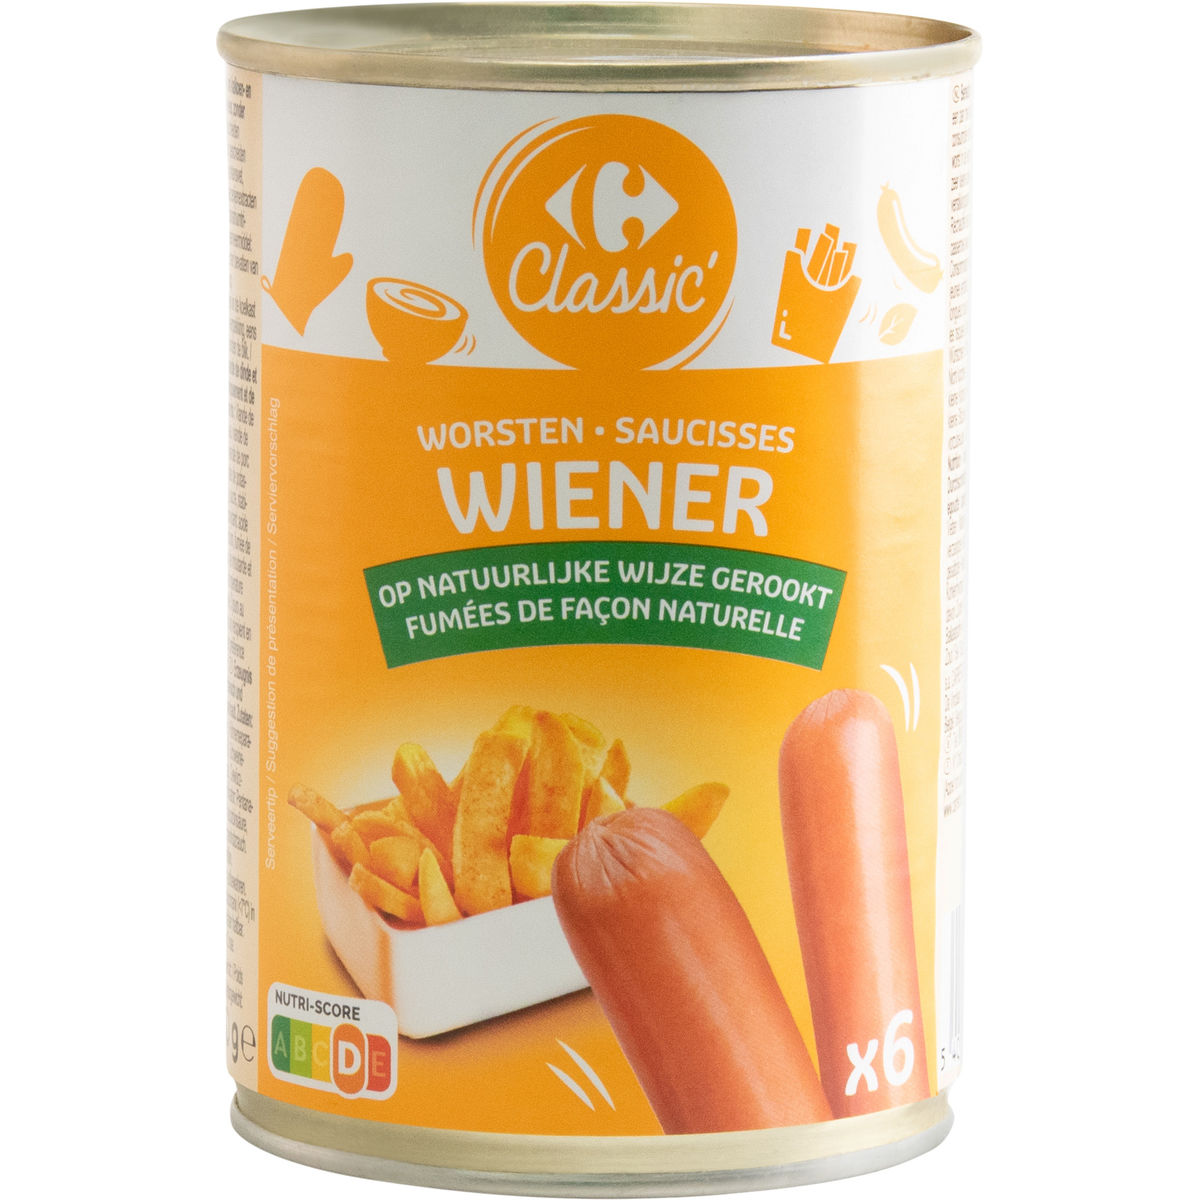 Carrefour Worsten Wiener 6 Stuks 410 g